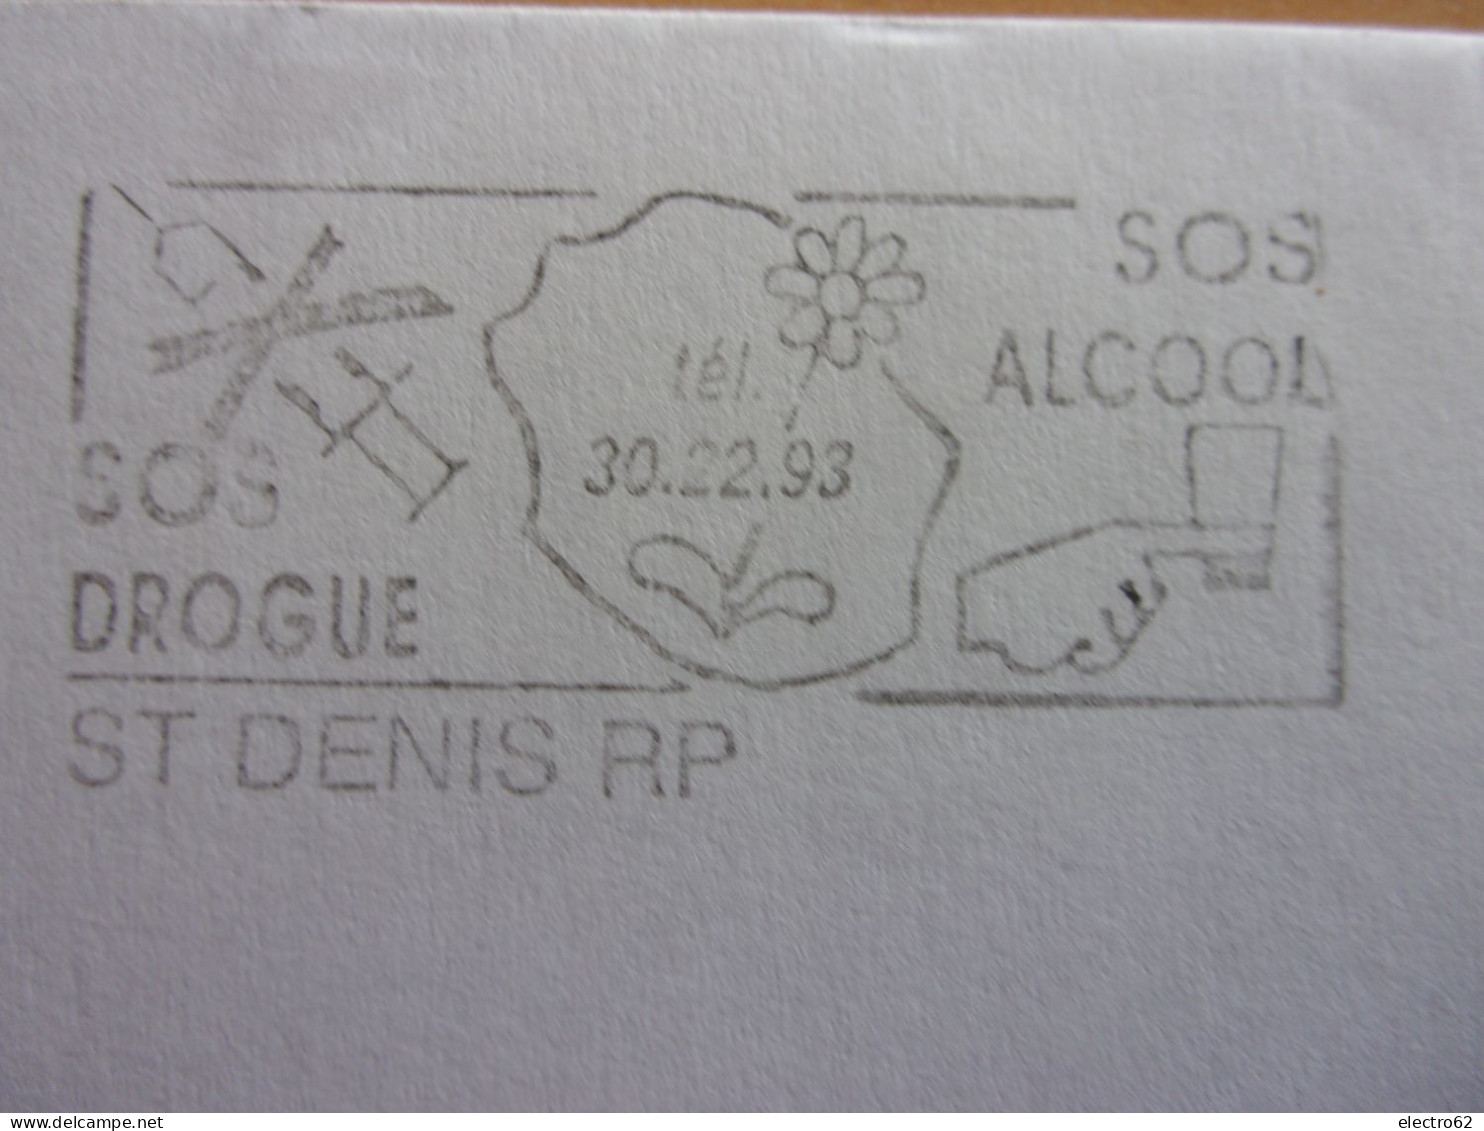 St Denis RP Réunion SOS Drogue Alcool Marianne Du Bicentenaire Seringue Fleur - Droga